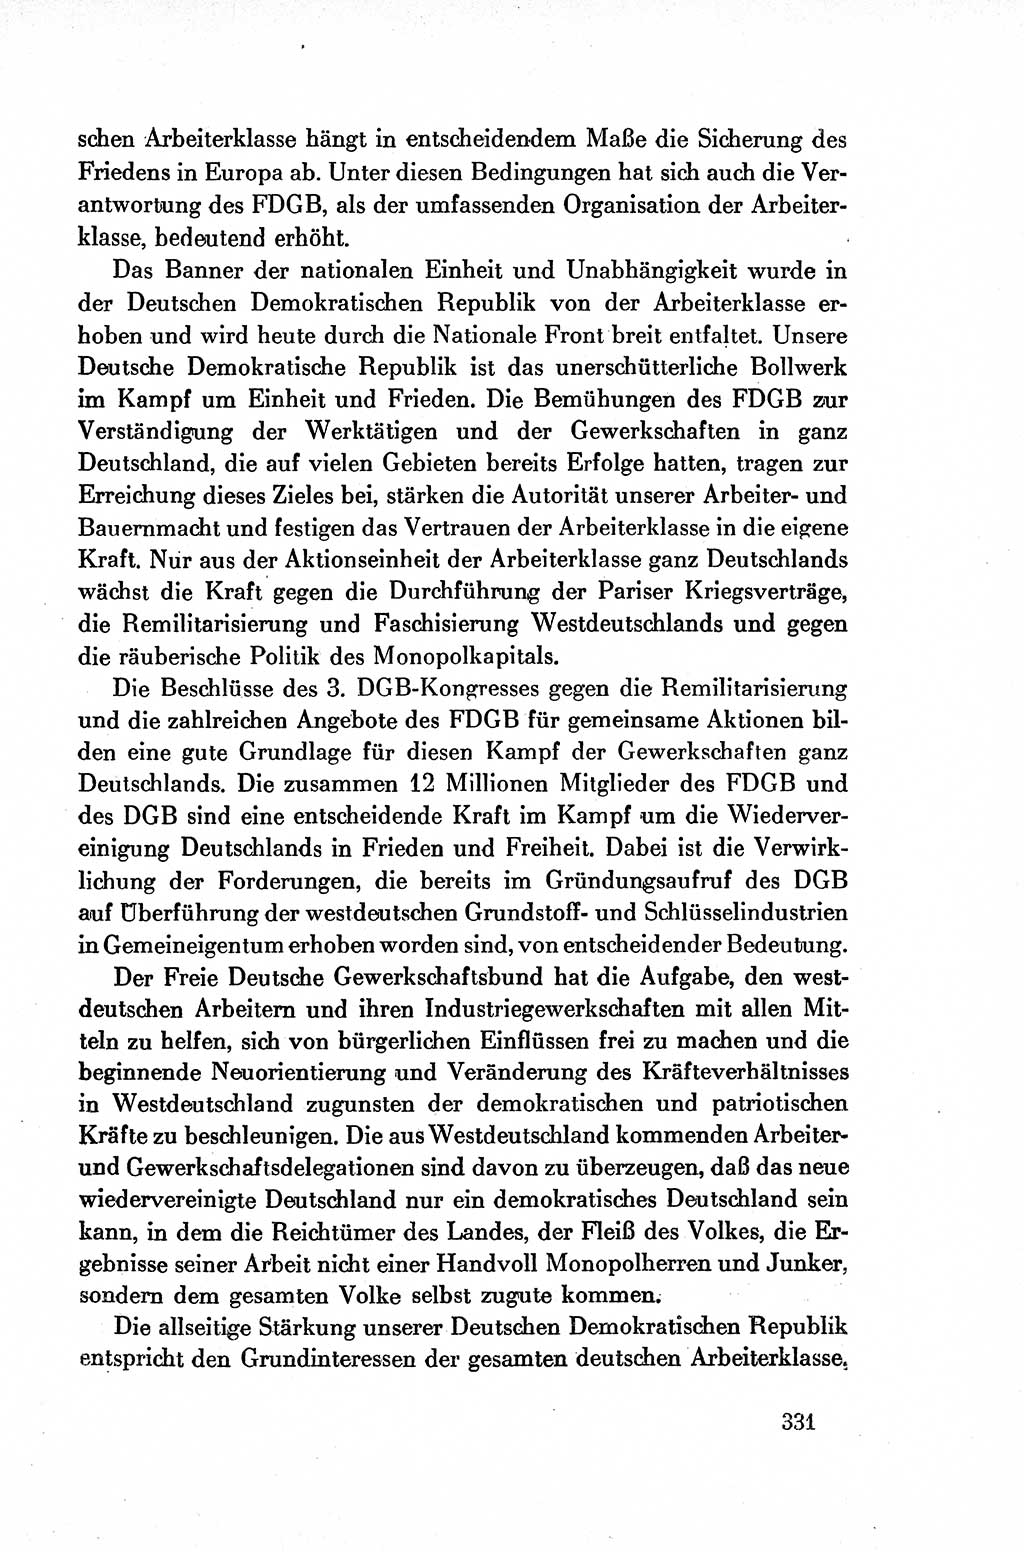 Dokumente der Sozialistischen Einheitspartei Deutschlands (SED) [Deutsche Demokratische Republik (DDR)] 1954-1955, Seite 331 (Dok. SED DDR 1954-1955, S. 331)